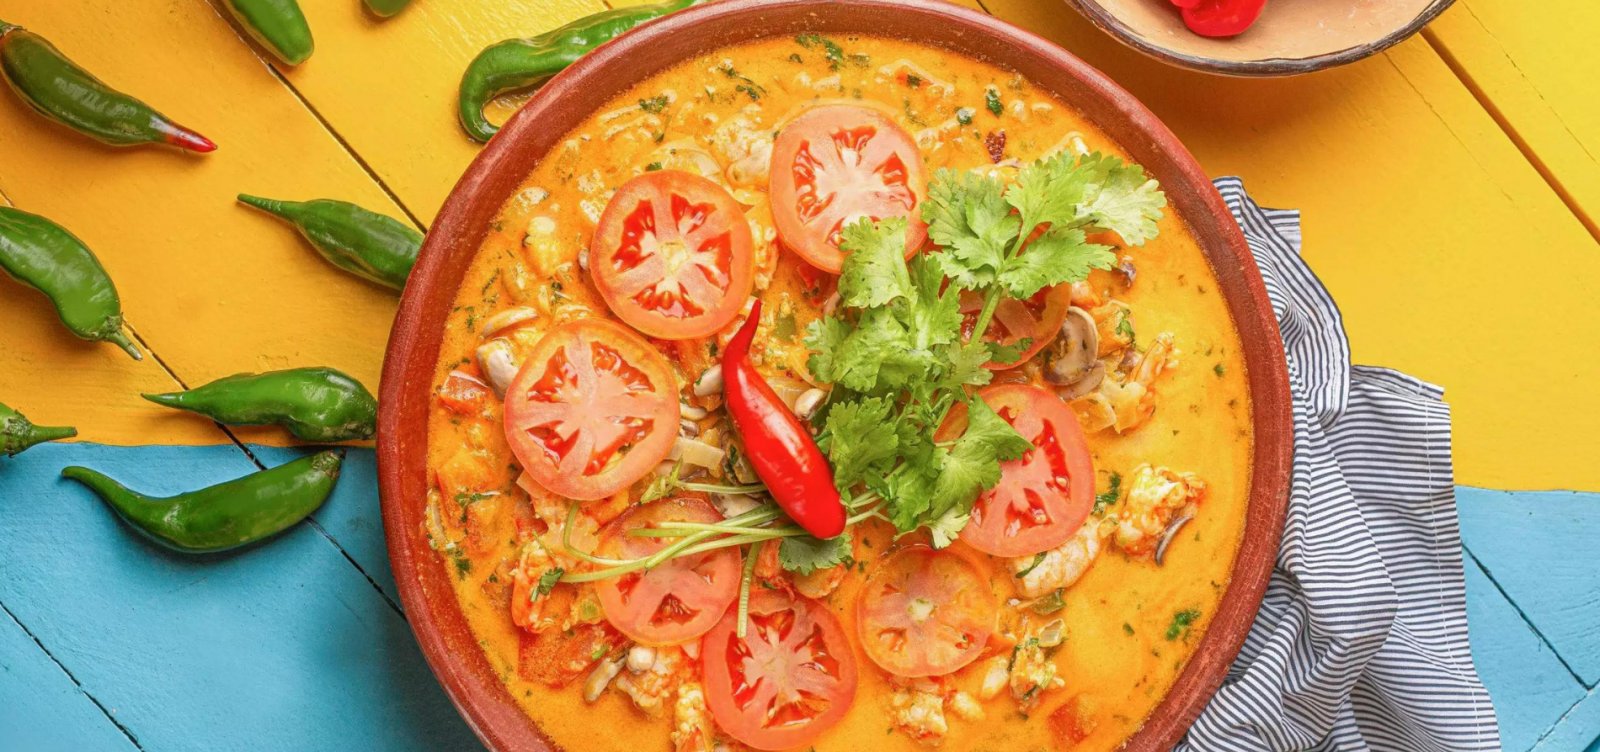 Gastronomia baiana é eleita a segunda melhor do país pelo guia Taste Atlas